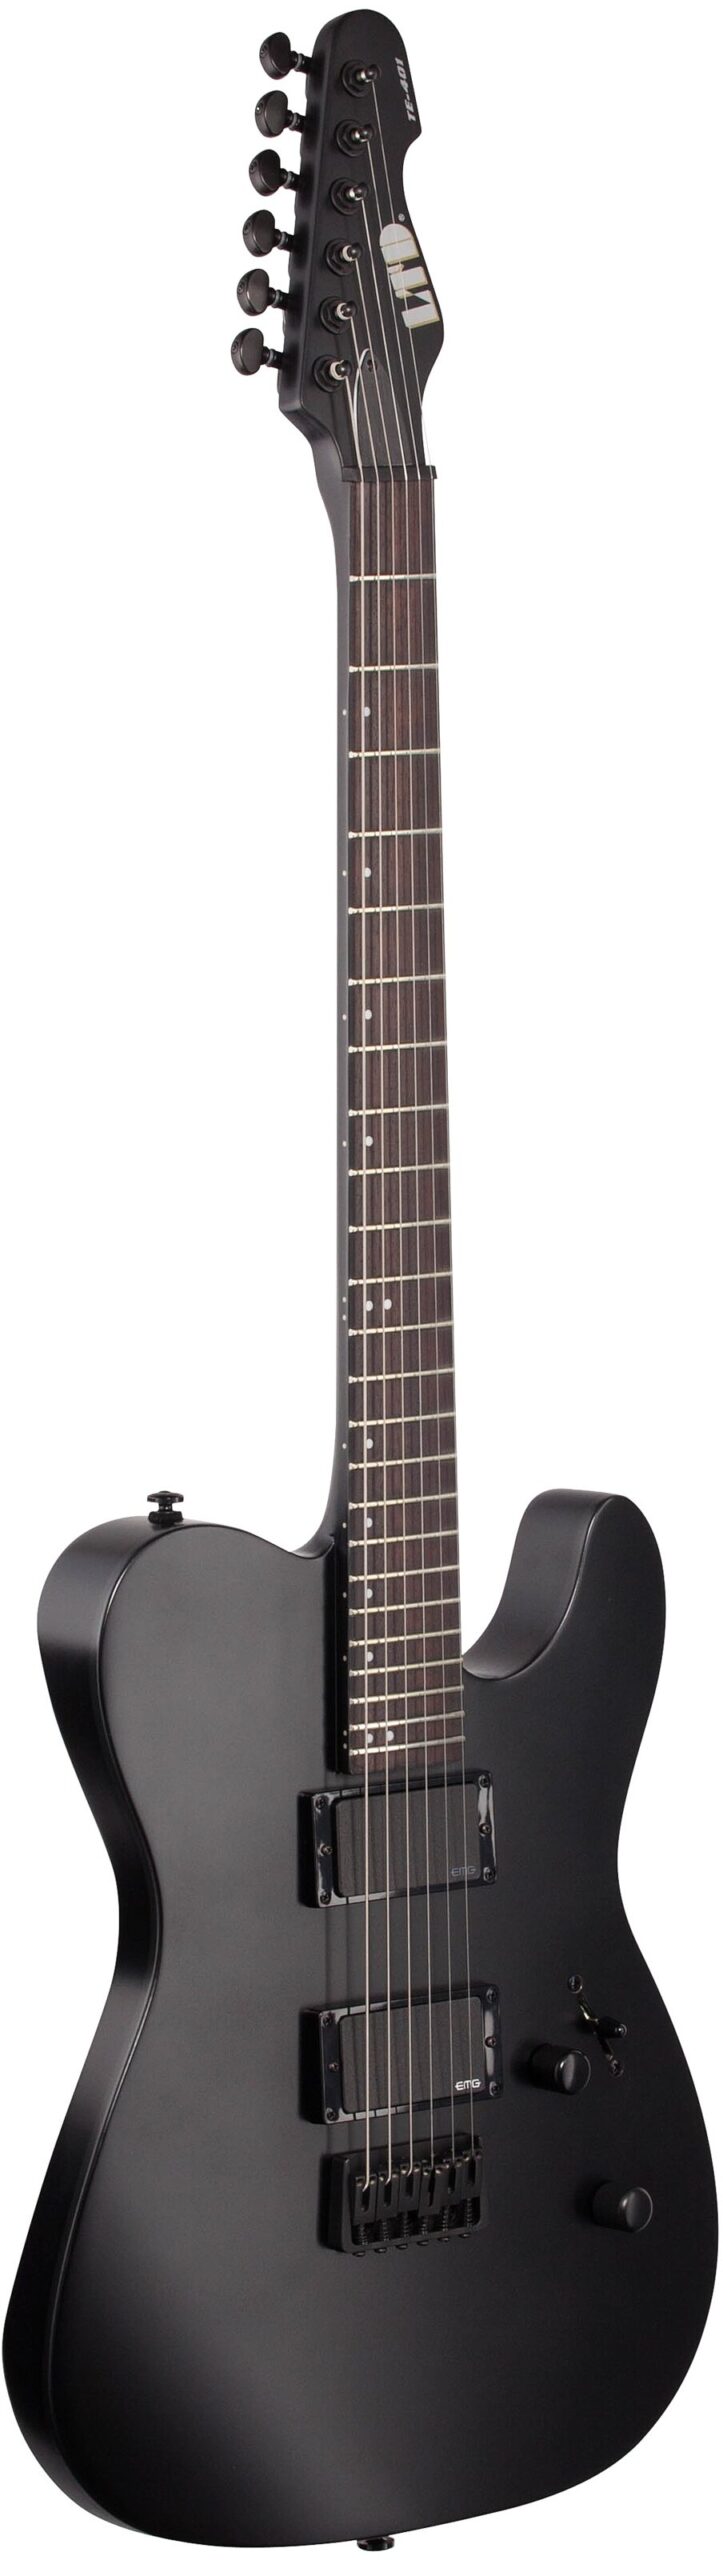 ESP LTD TE-401 Electric Guitar, Black Satin